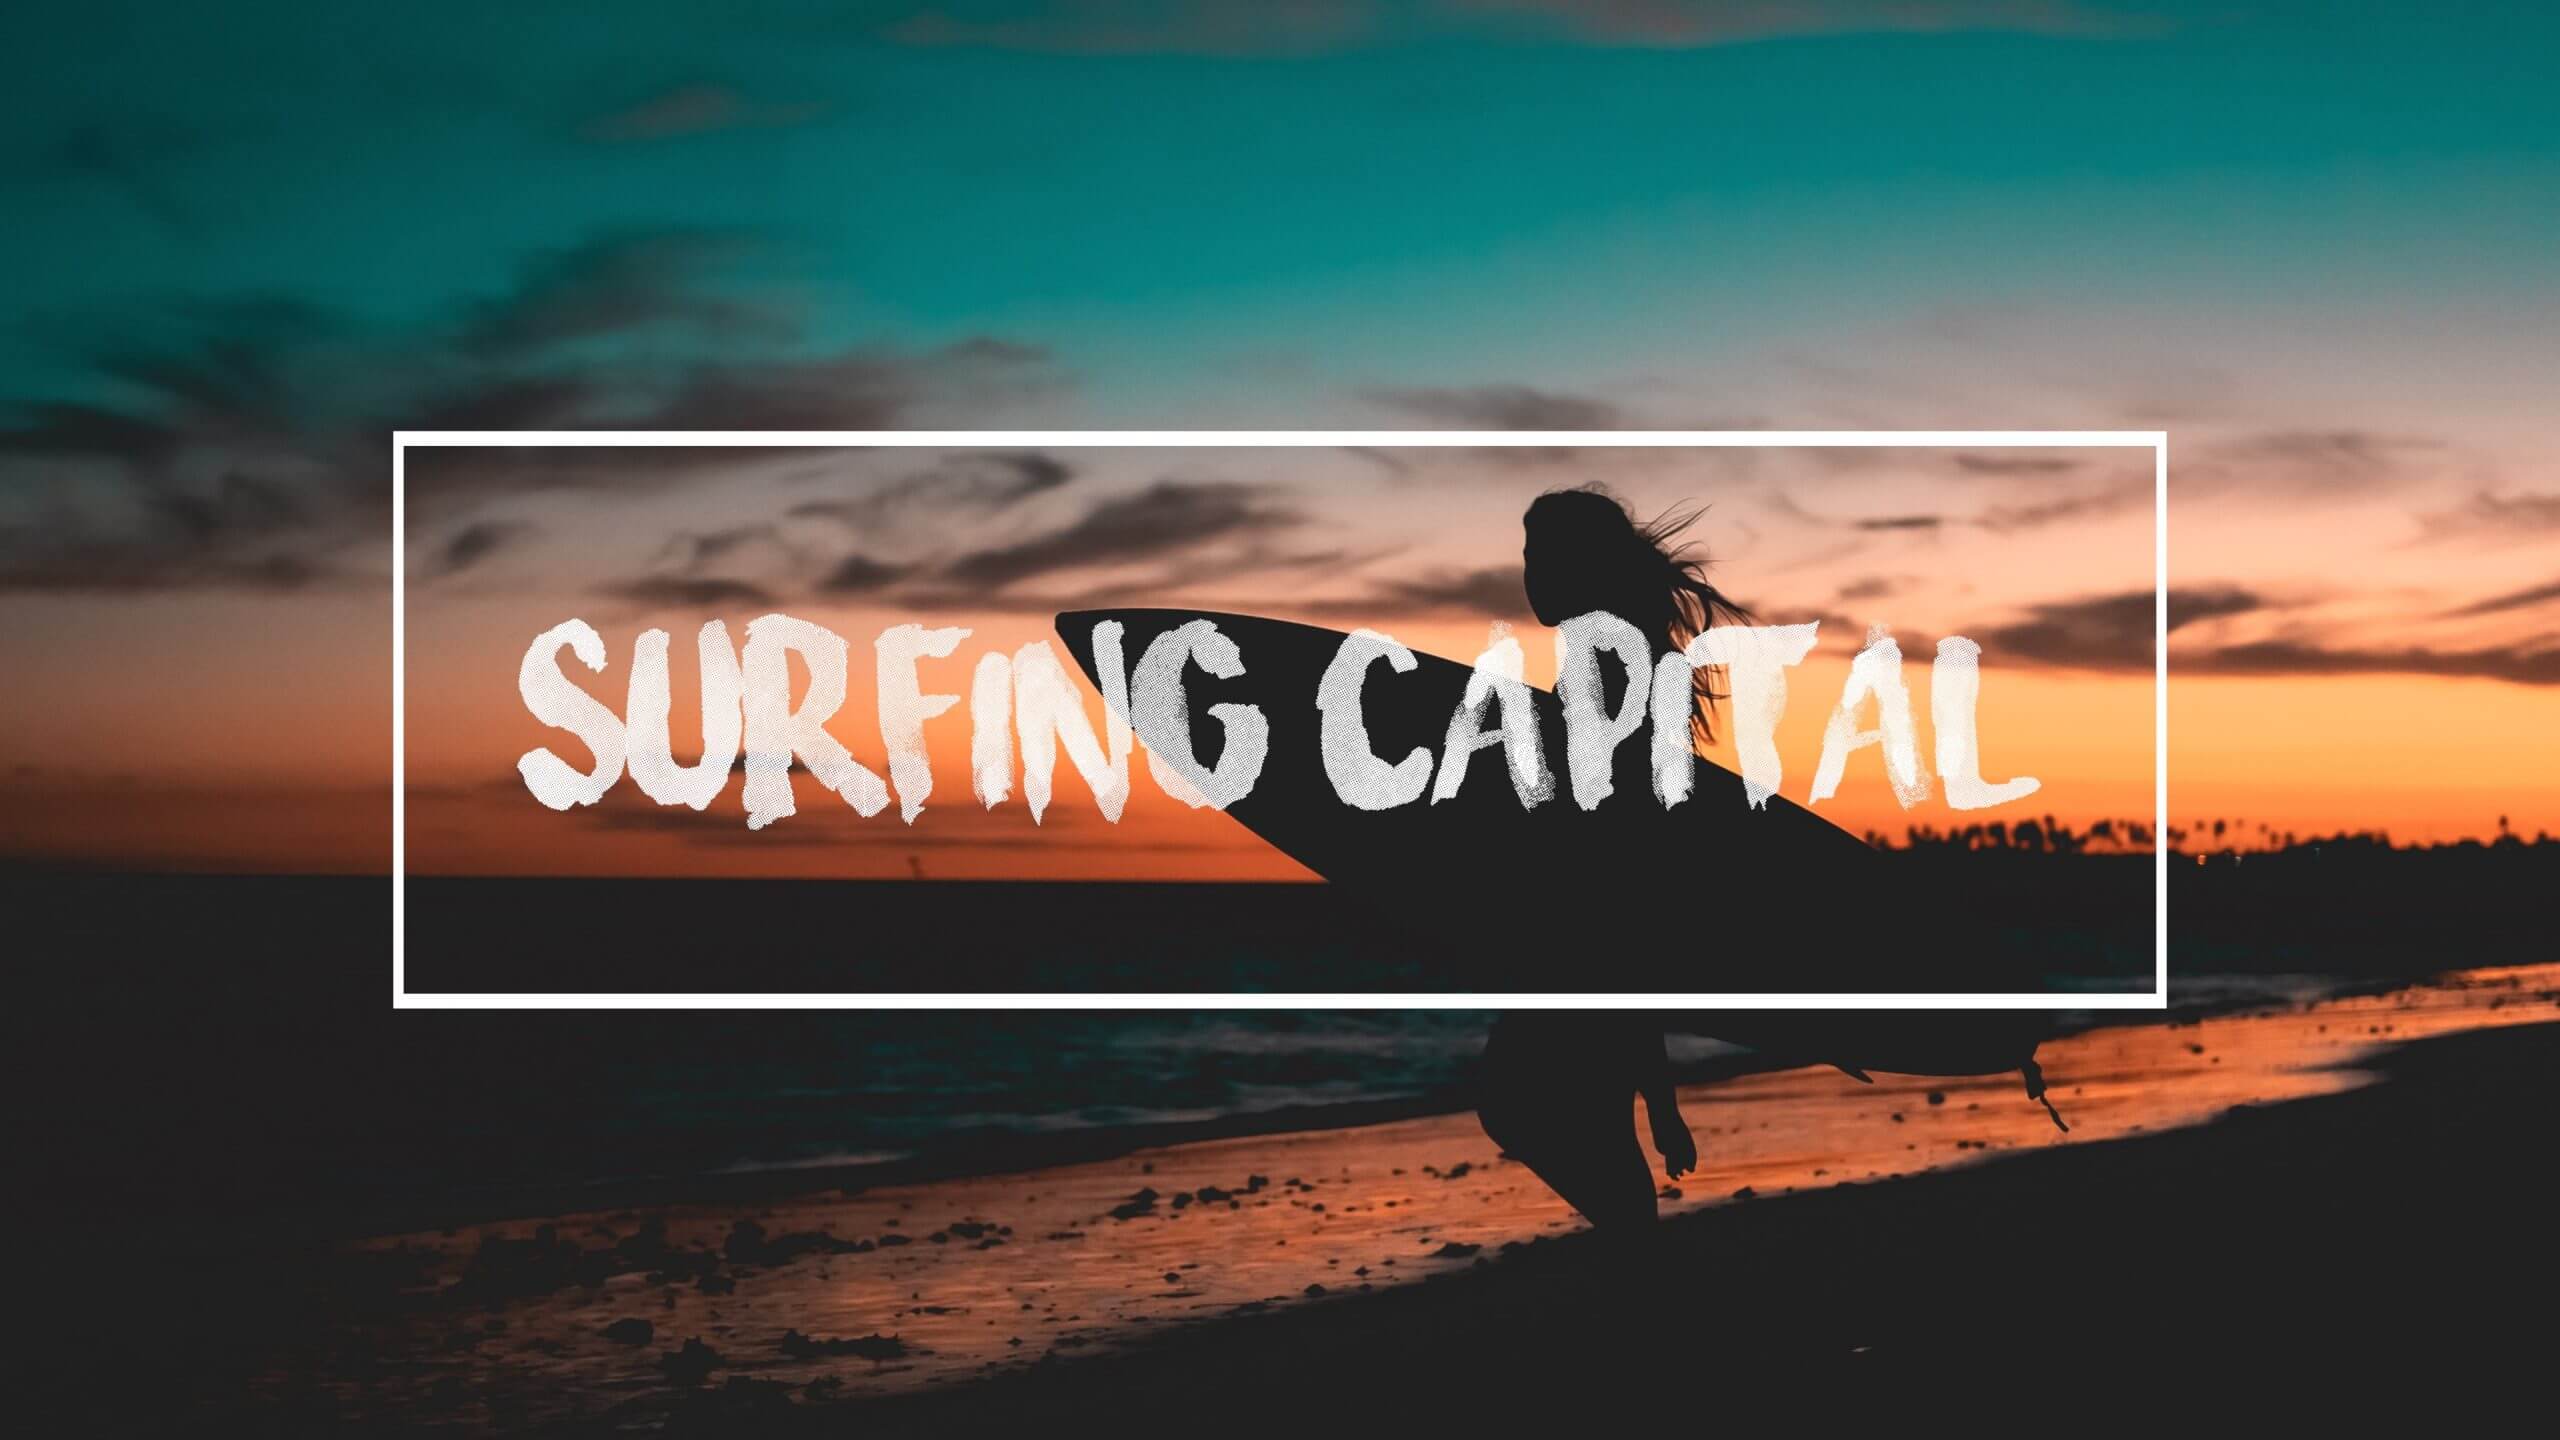 映像クリエイター サムコルダーのフォント「Surfing Capital」